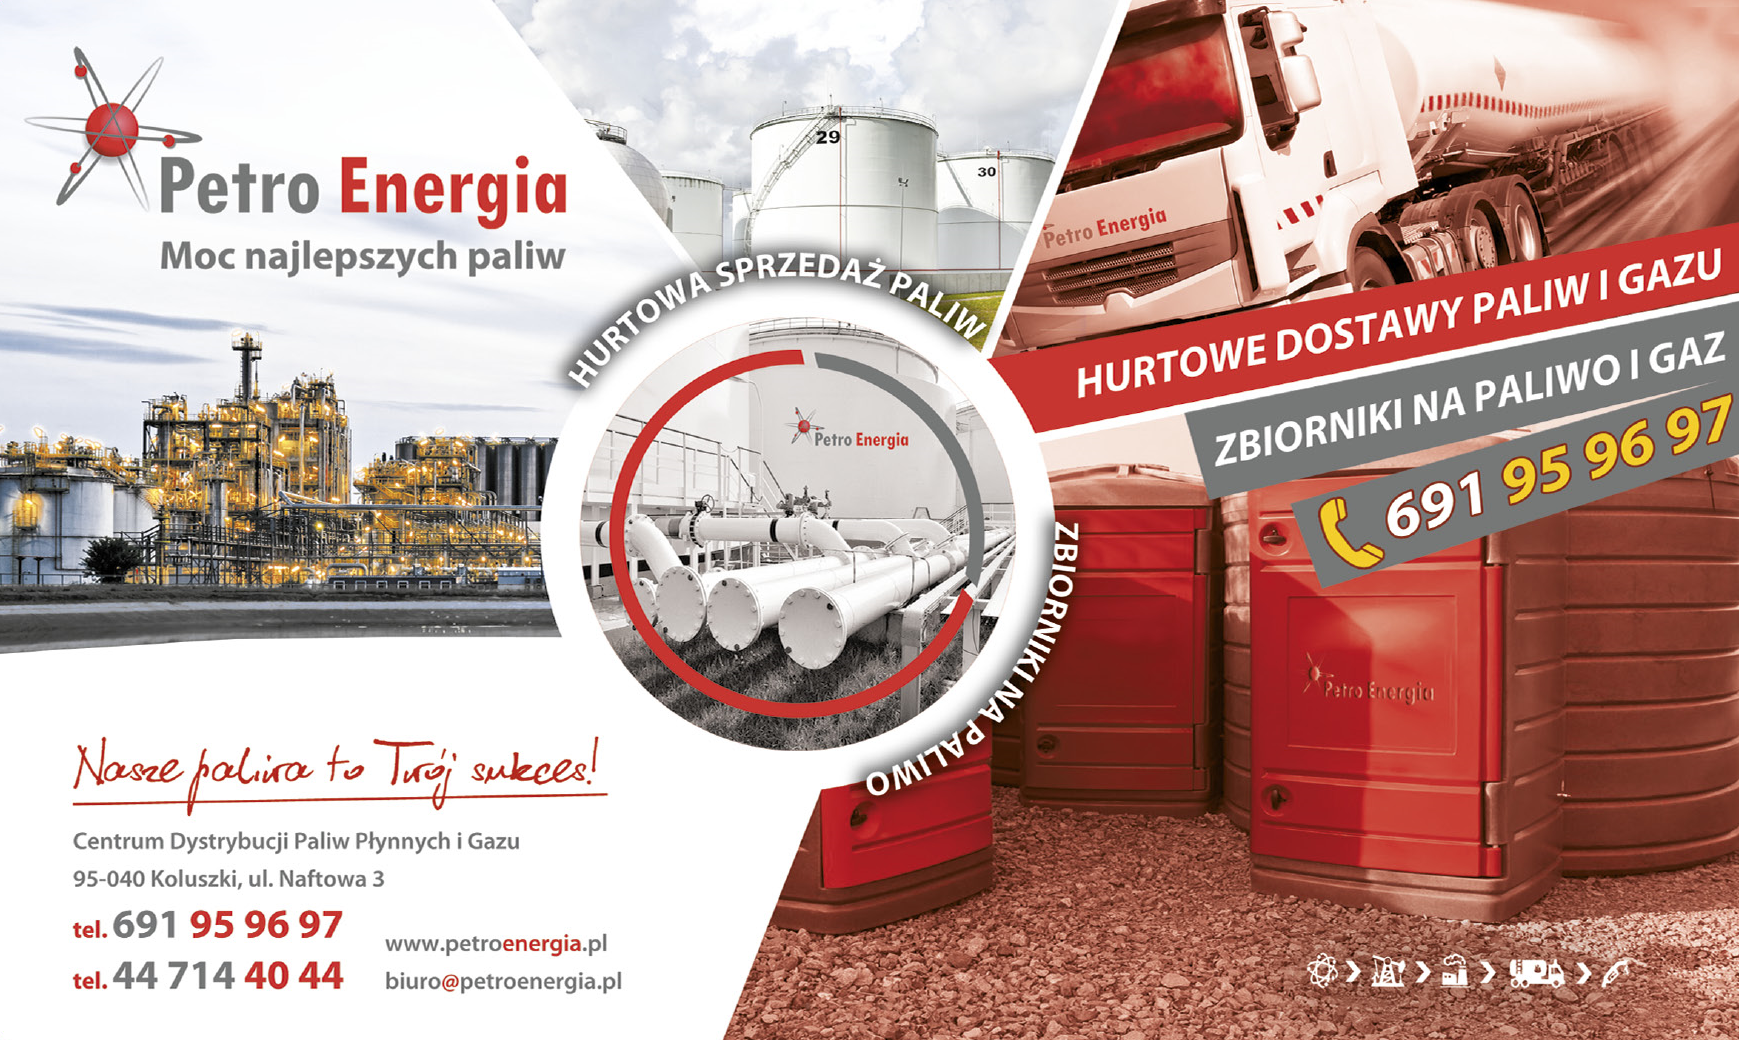 Petro Energia Koluszki Centrum Dystybucji Paliw Płynnych i Gazu / Hurtowe Dostawy Paliw i Gazu